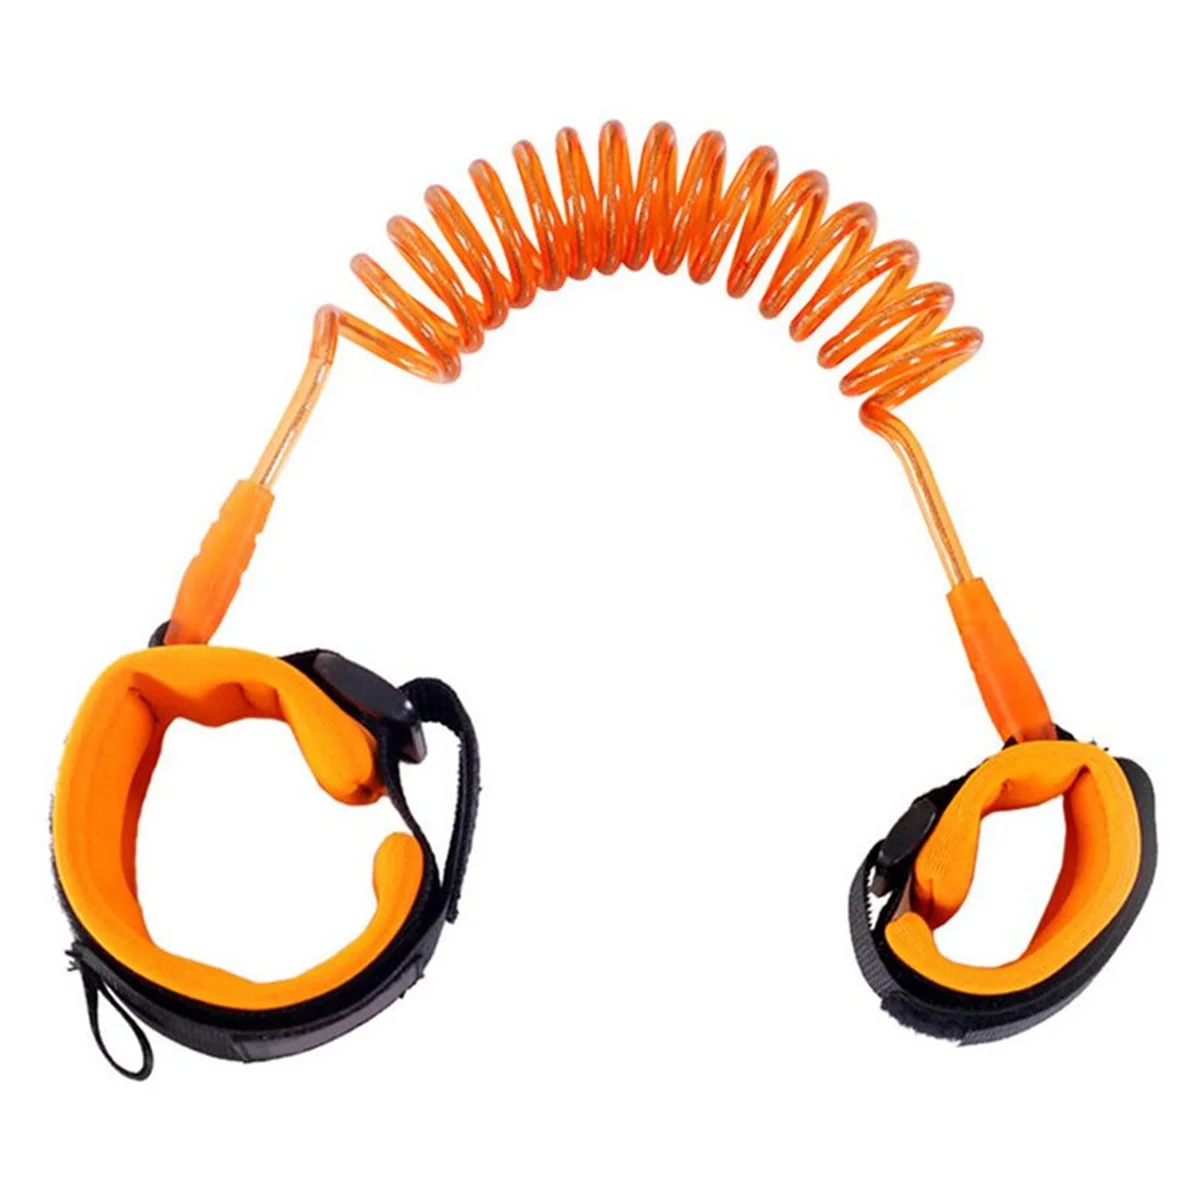 Анти-потеря запястья для бандаж для беременных Веревка безопасности для прогулок на открытом воздухе ручной ремень анти-потеря браслет безопасность Горячая Новинка - Цвет: Orange 1.5m box